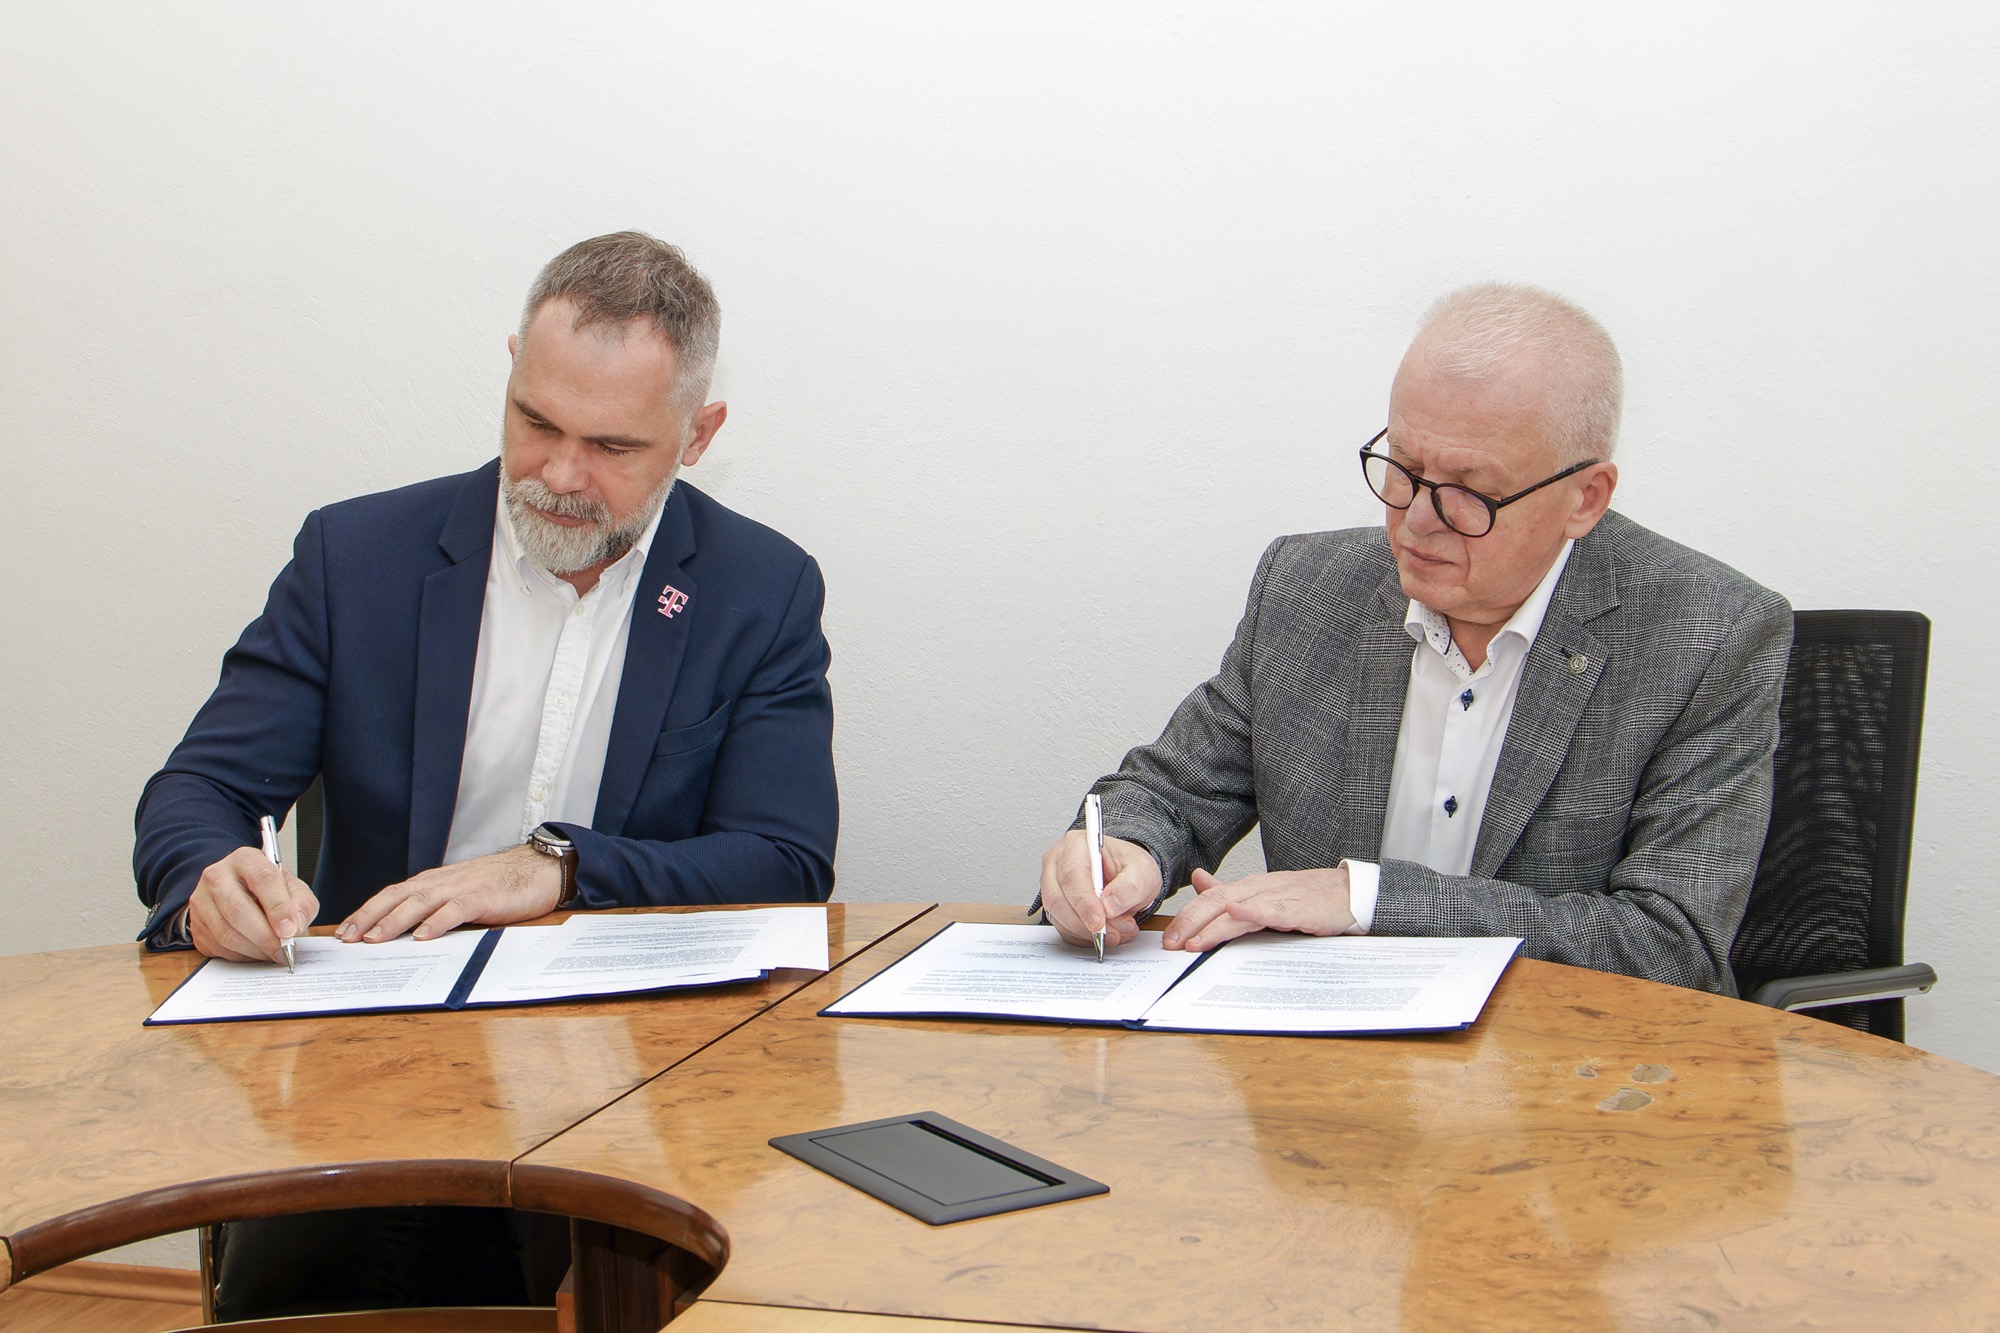 Ekonomická univerzita v Bratislave a Deutsche Telekom Services Europe Slovakia budú spolupracovať